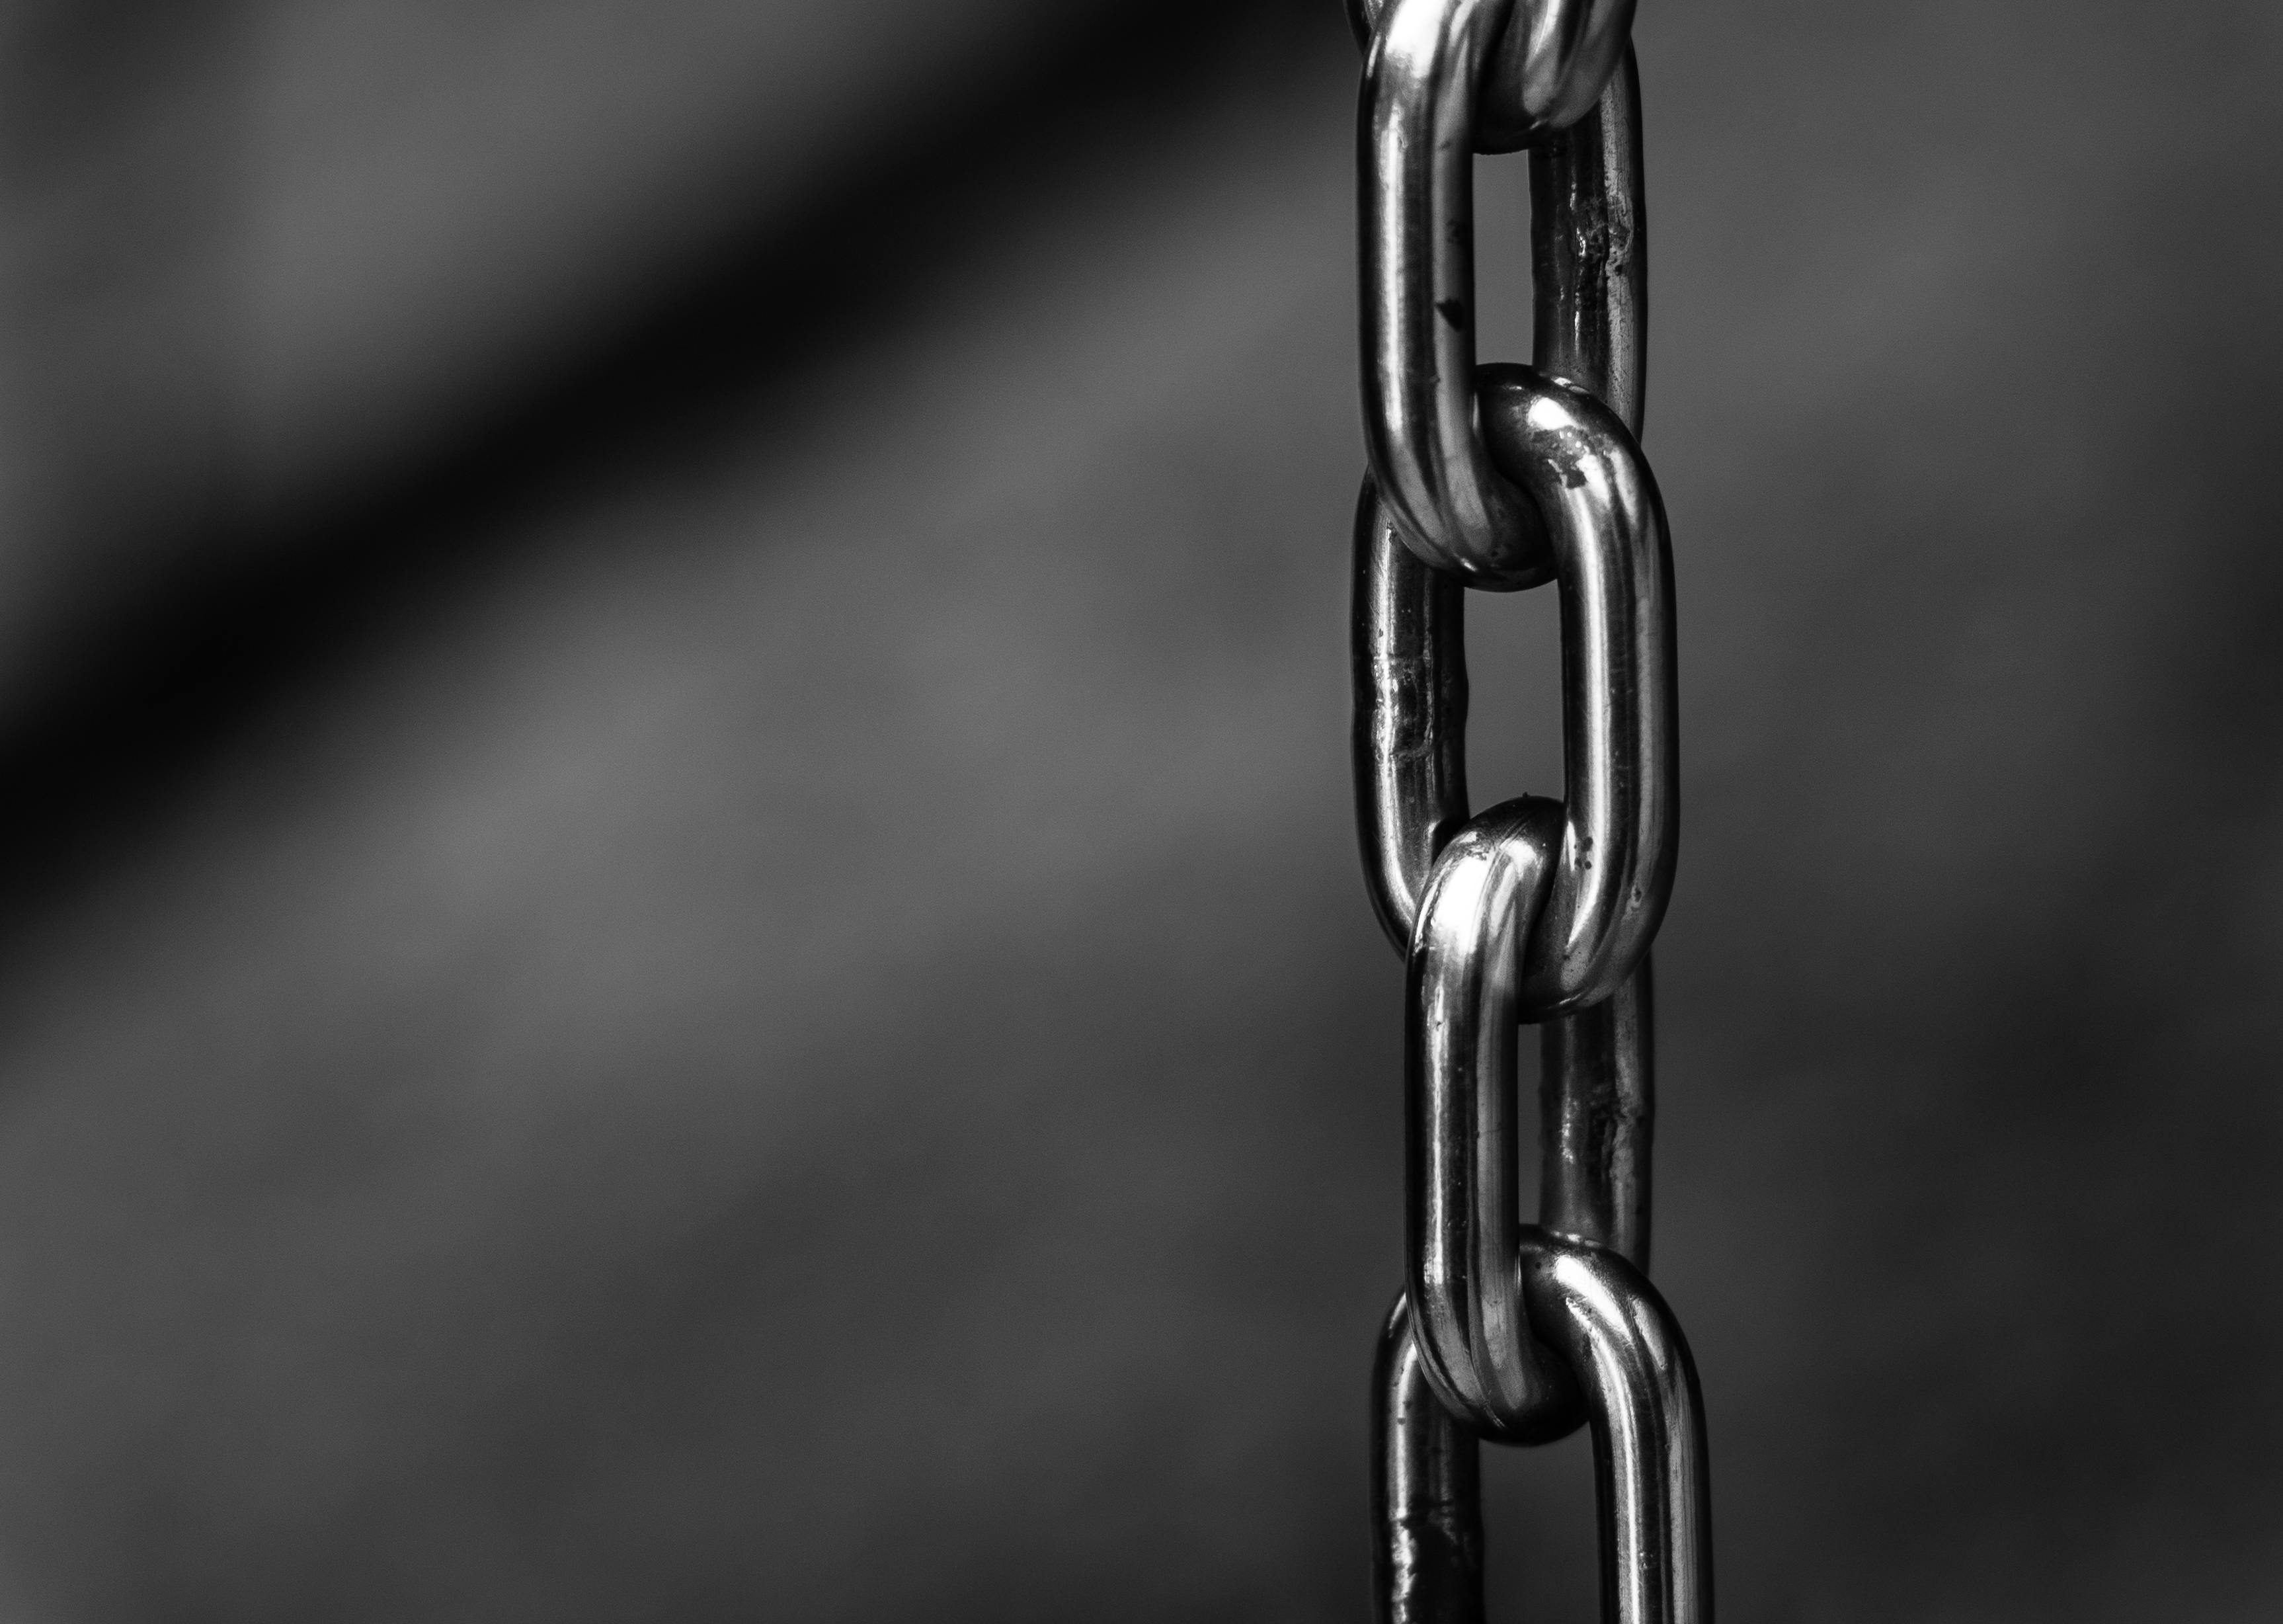 chain background